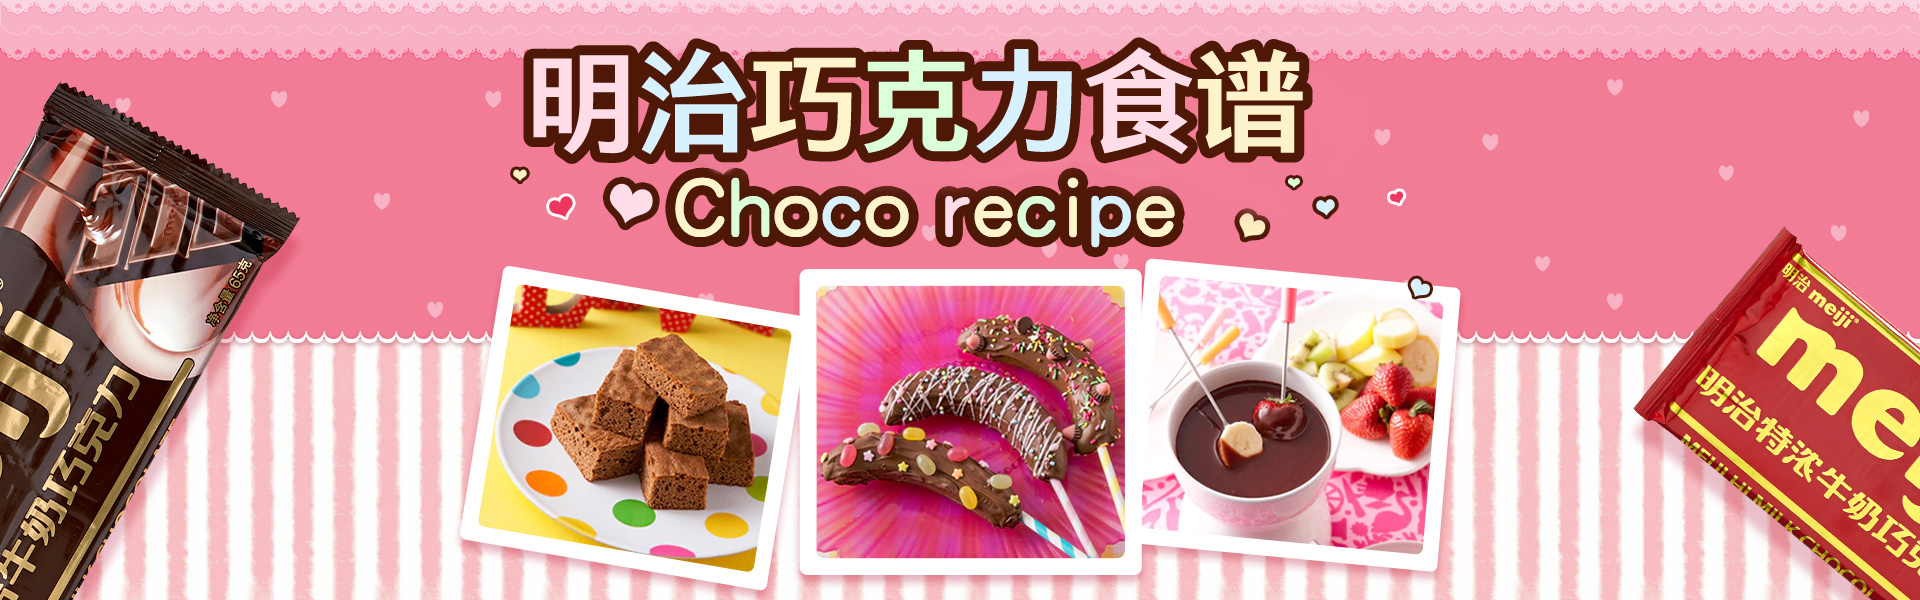 明治巧克力食谱,Choco recipe